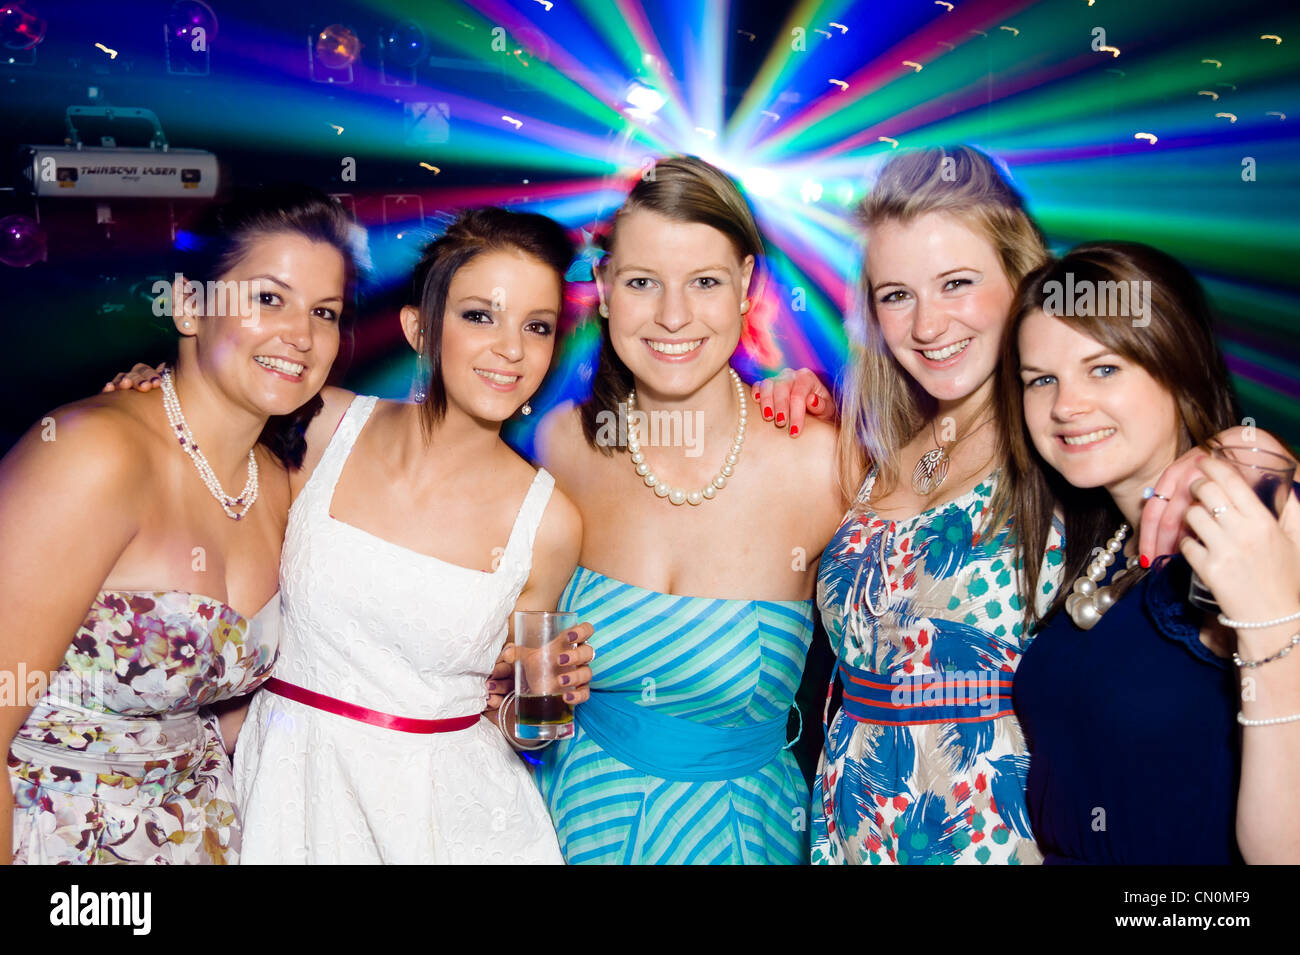 Un groupe de cinq filles s'amuser lors d'une fête ou de nuit avec soirée disco lights dans l'arrière-plan. Banque D'Images